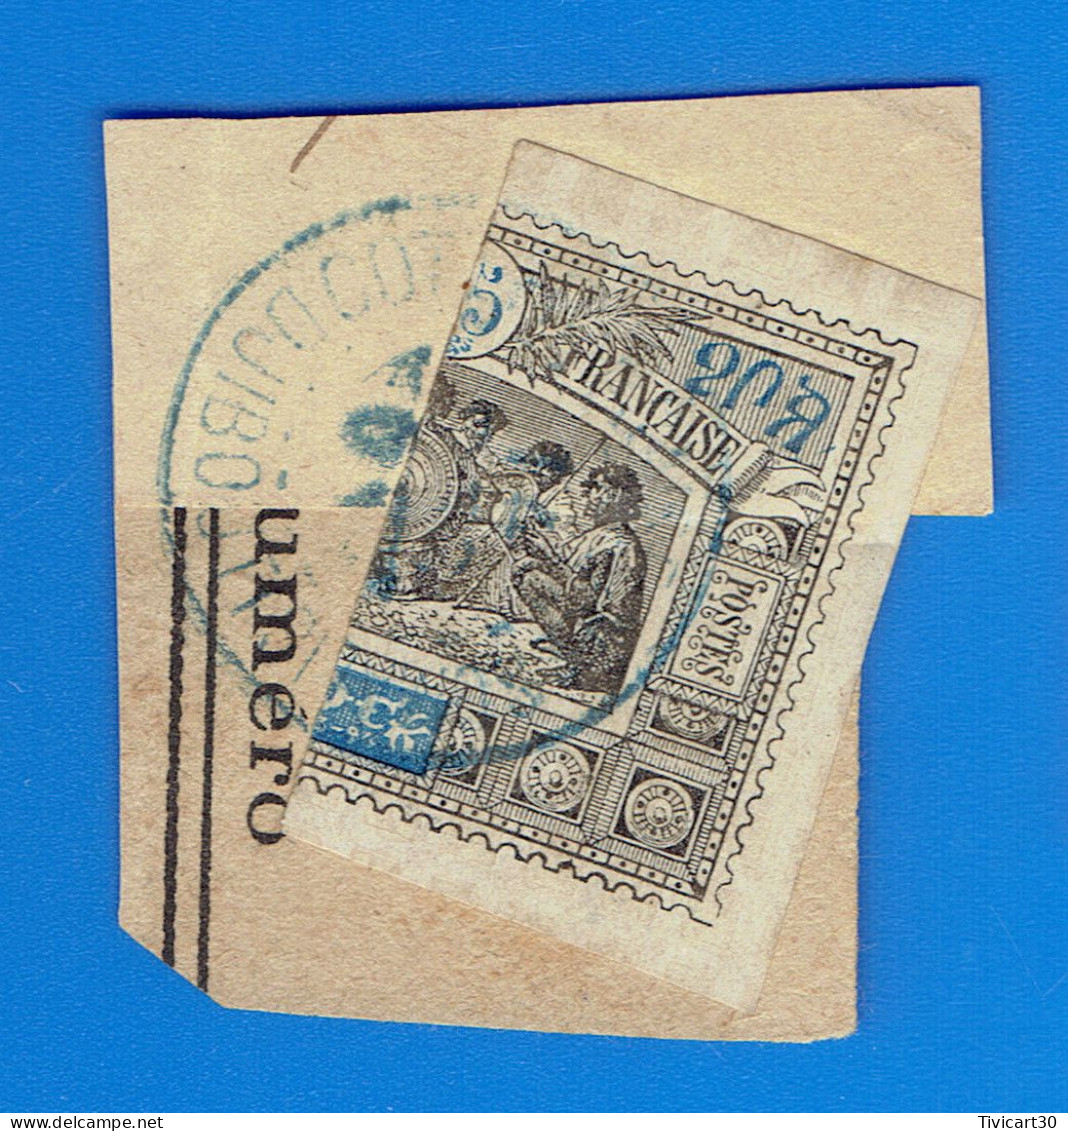 TIMBRE COLONIES FRANCAISES SUR FRAGMENT - DJIBOUTI - OBOCK - MOITIE DROITE DE 25 C. NOIR ET BLEU - N° 54 B - Used Stamps